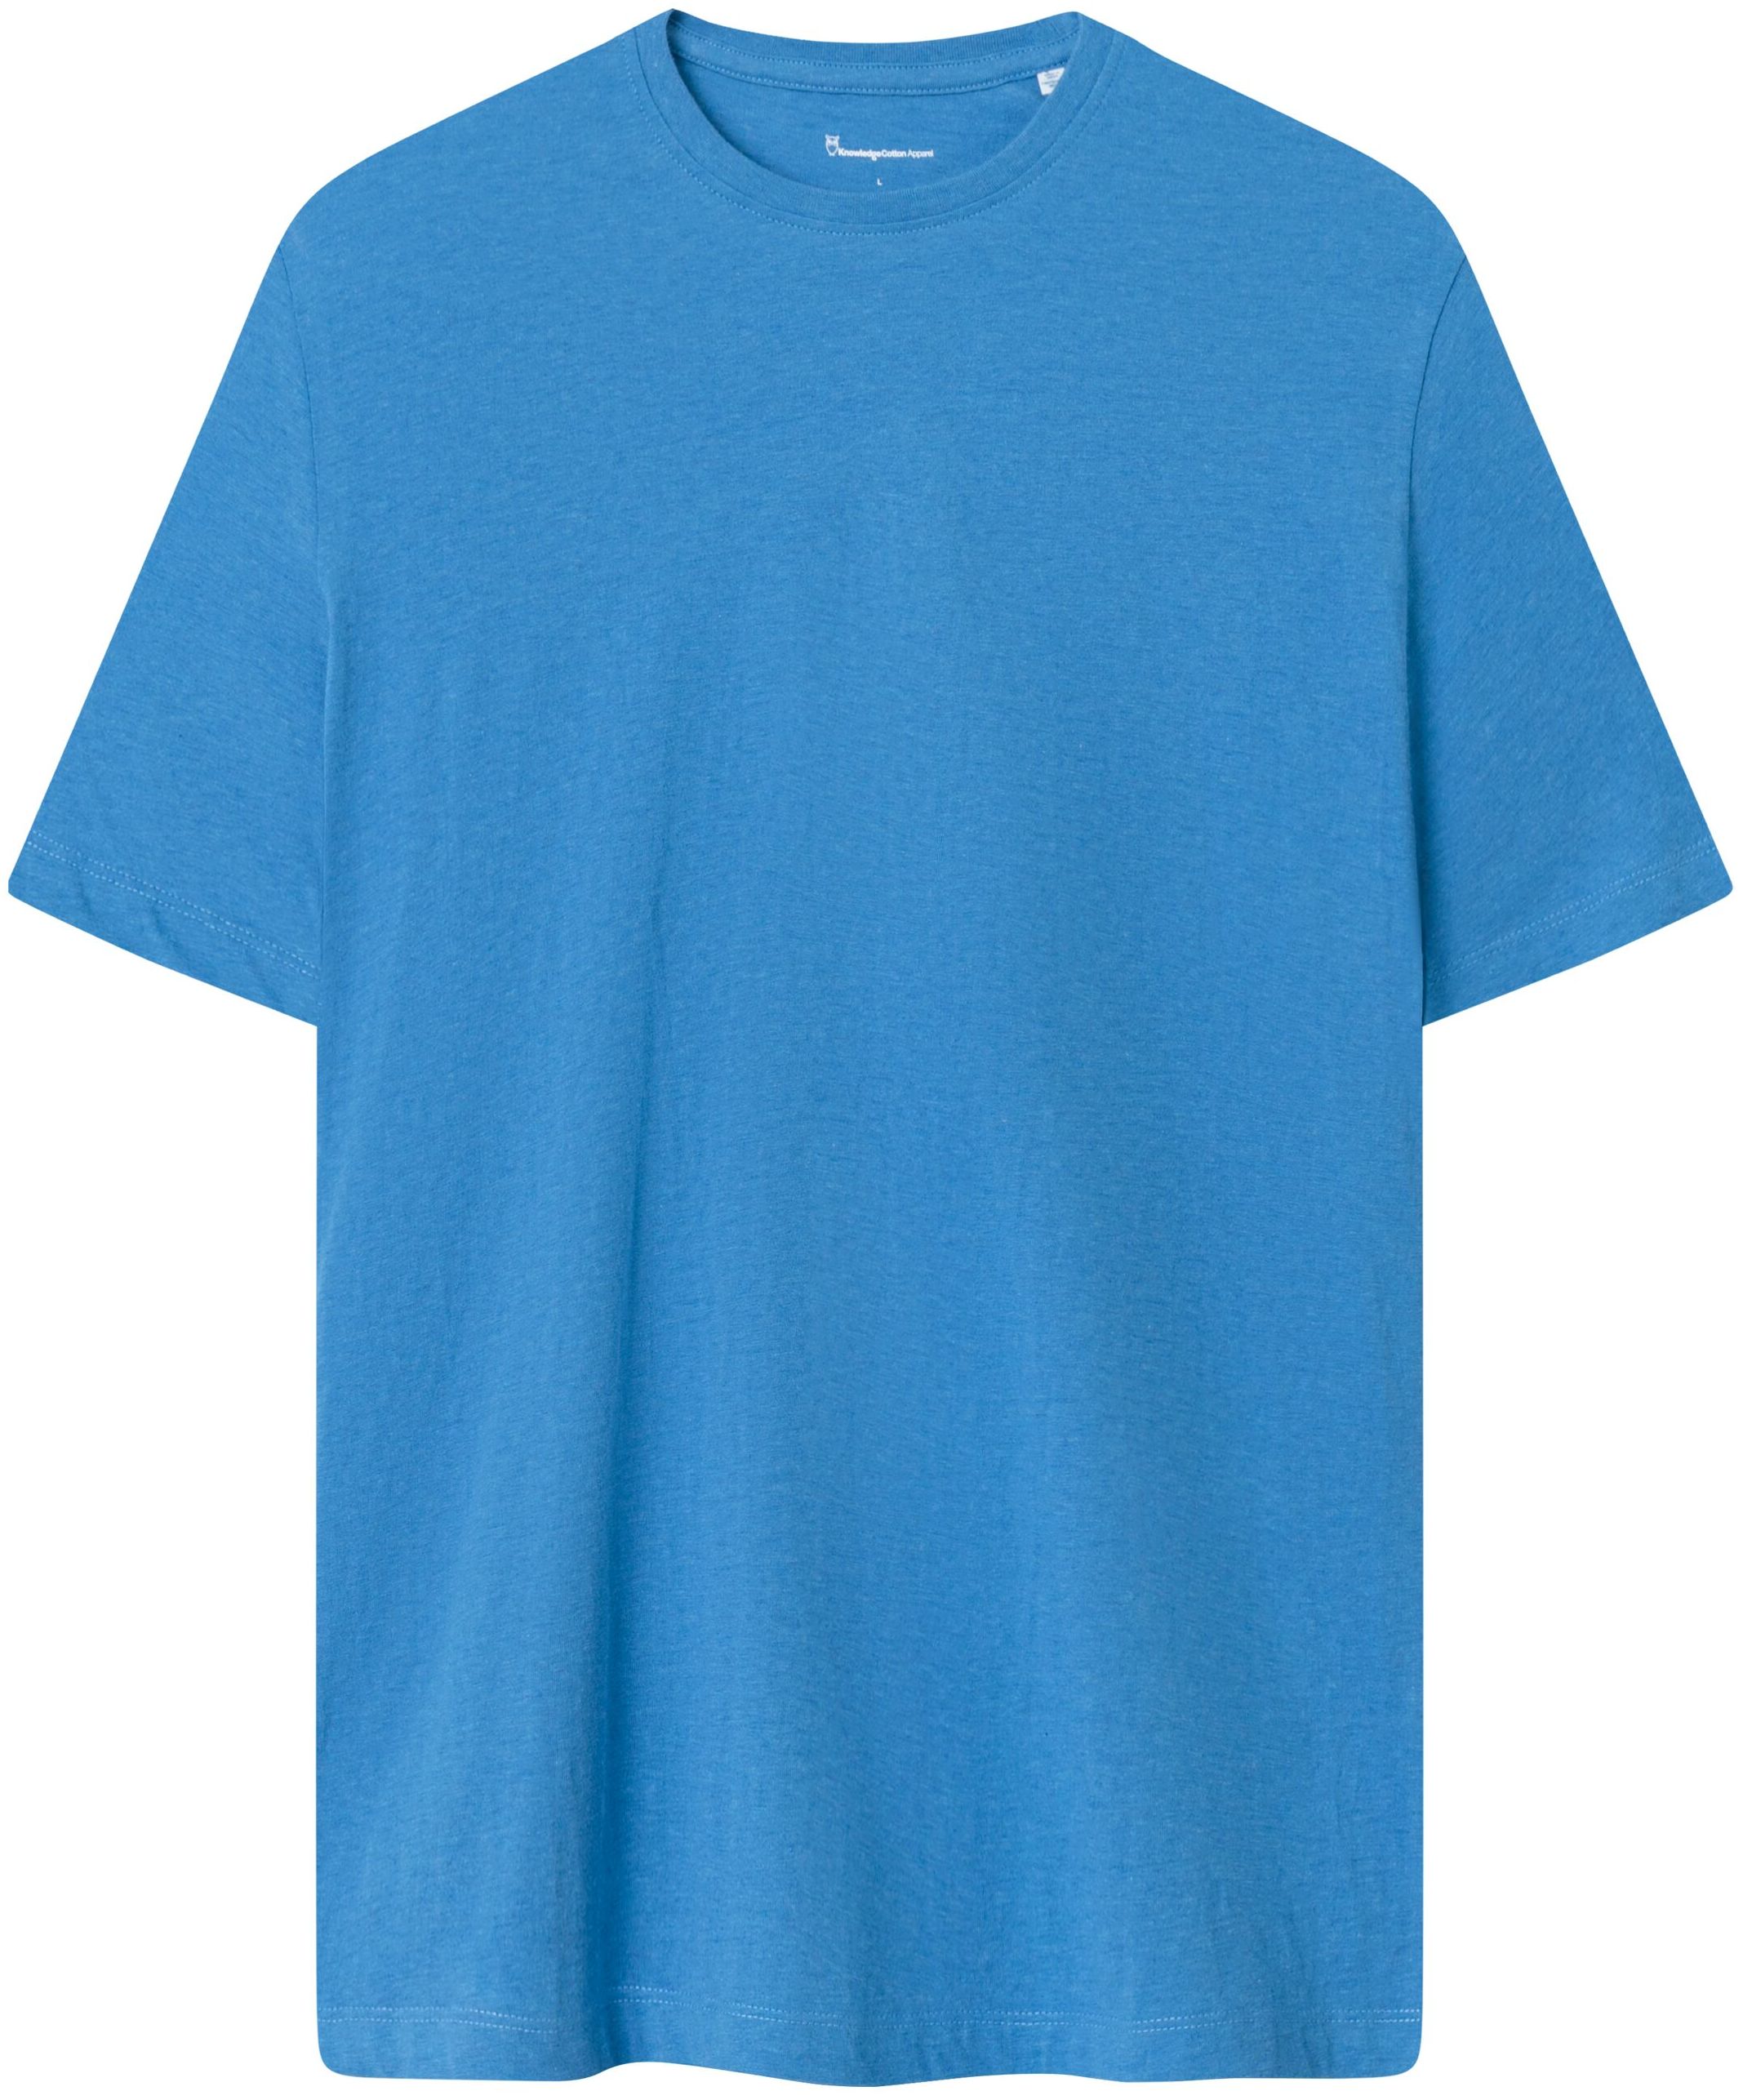 Basic T-Shirt Campanula Melange